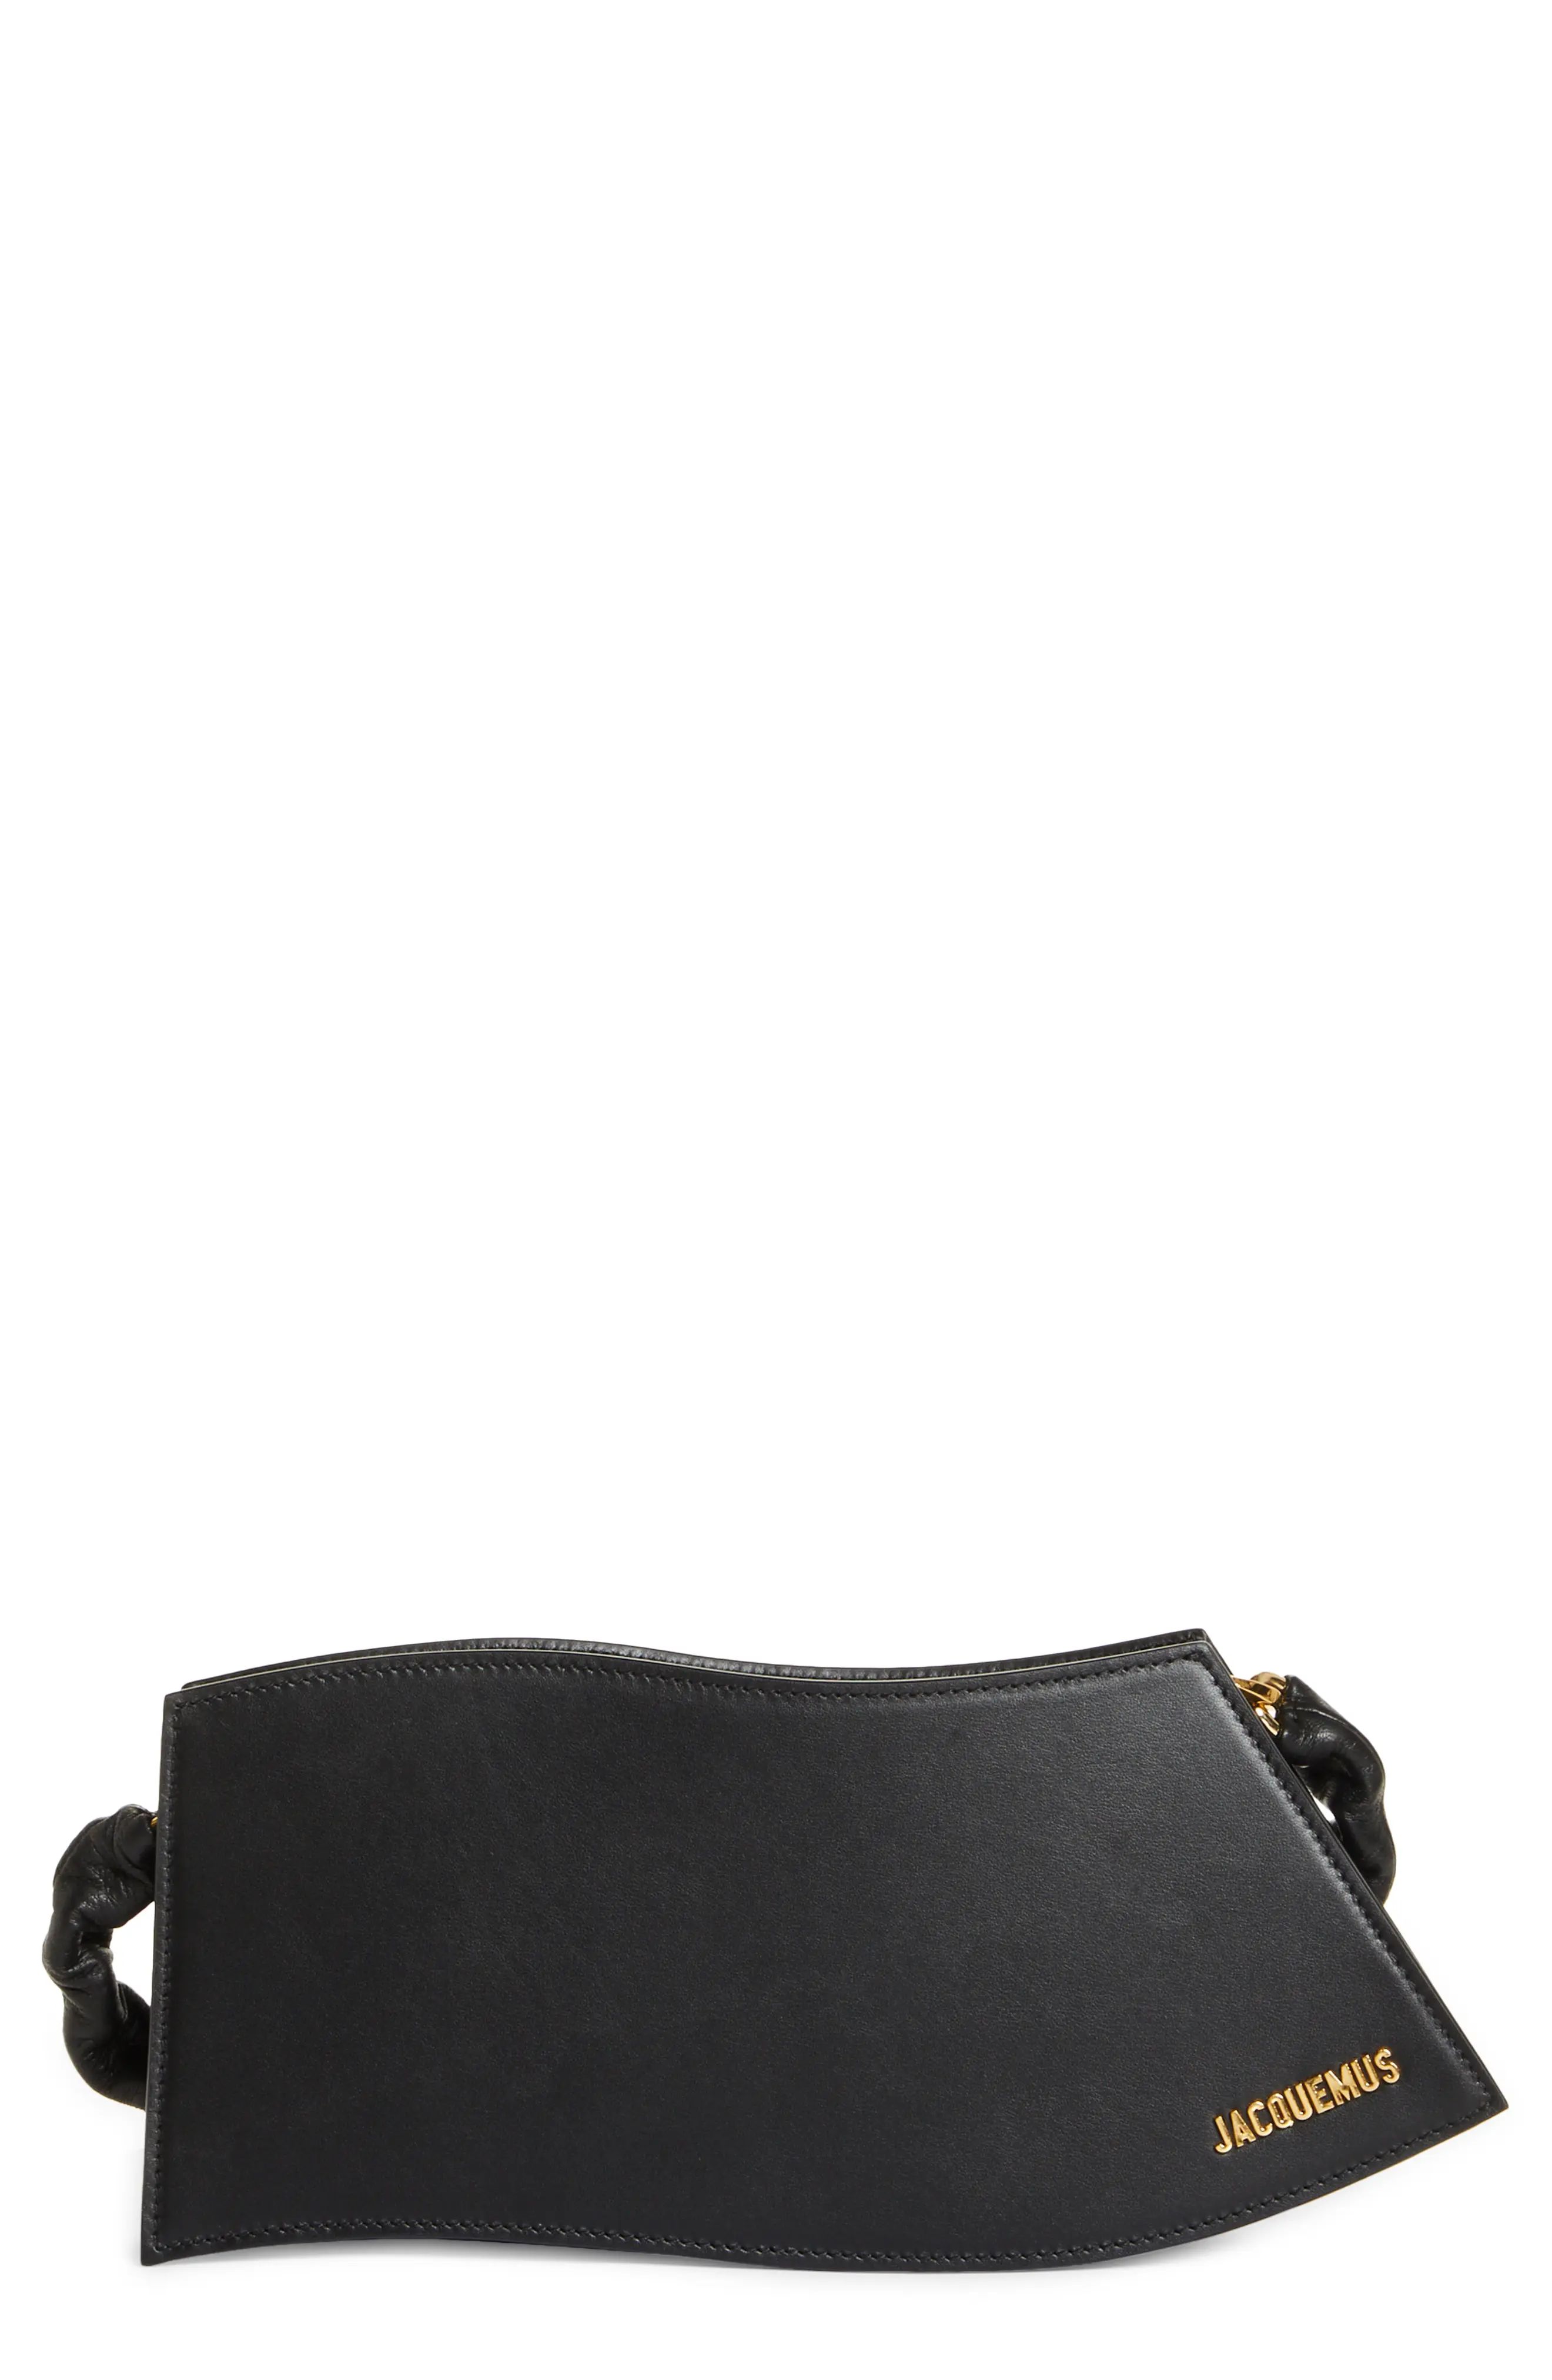 Jacquemus La Vague Leather Shoulder Bag in Black at Nordstrom | Nordstrom